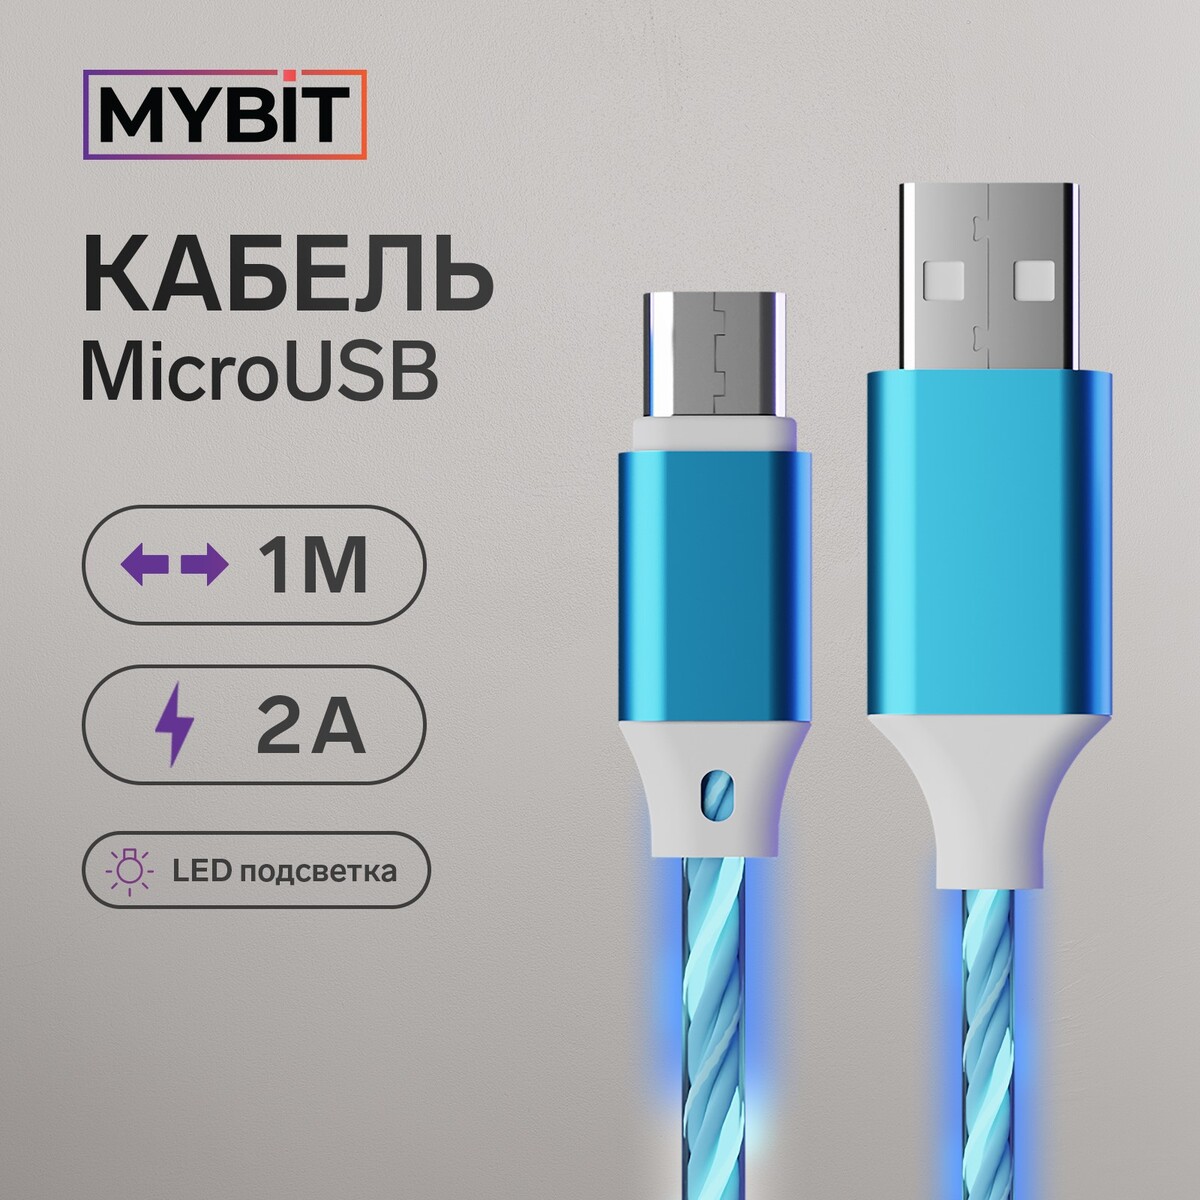 Кабель mybit, microusb - usb, динамическая led подсветка, 2 а, 1 м, только зарядка кабель 3 в 1 mybit microusb type c lightning usb динамическая led подсветка 2 а 1 м только зарядка